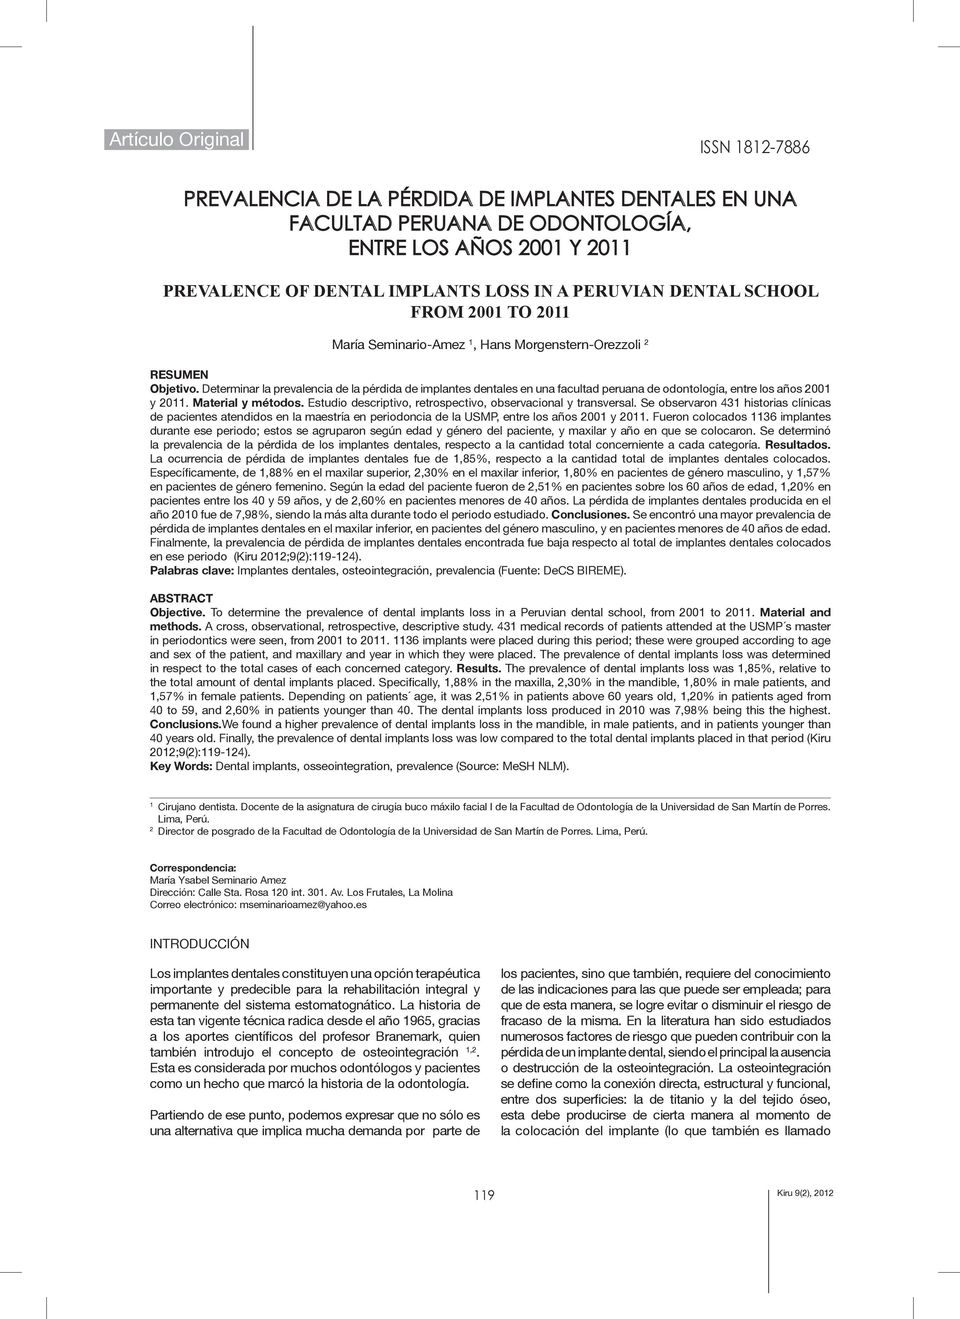 Determinar la prevalencia de la pérdida de implantes dentales en una facultad peruana de odontología, entre los años 2001 y 2011. Material y métodos.